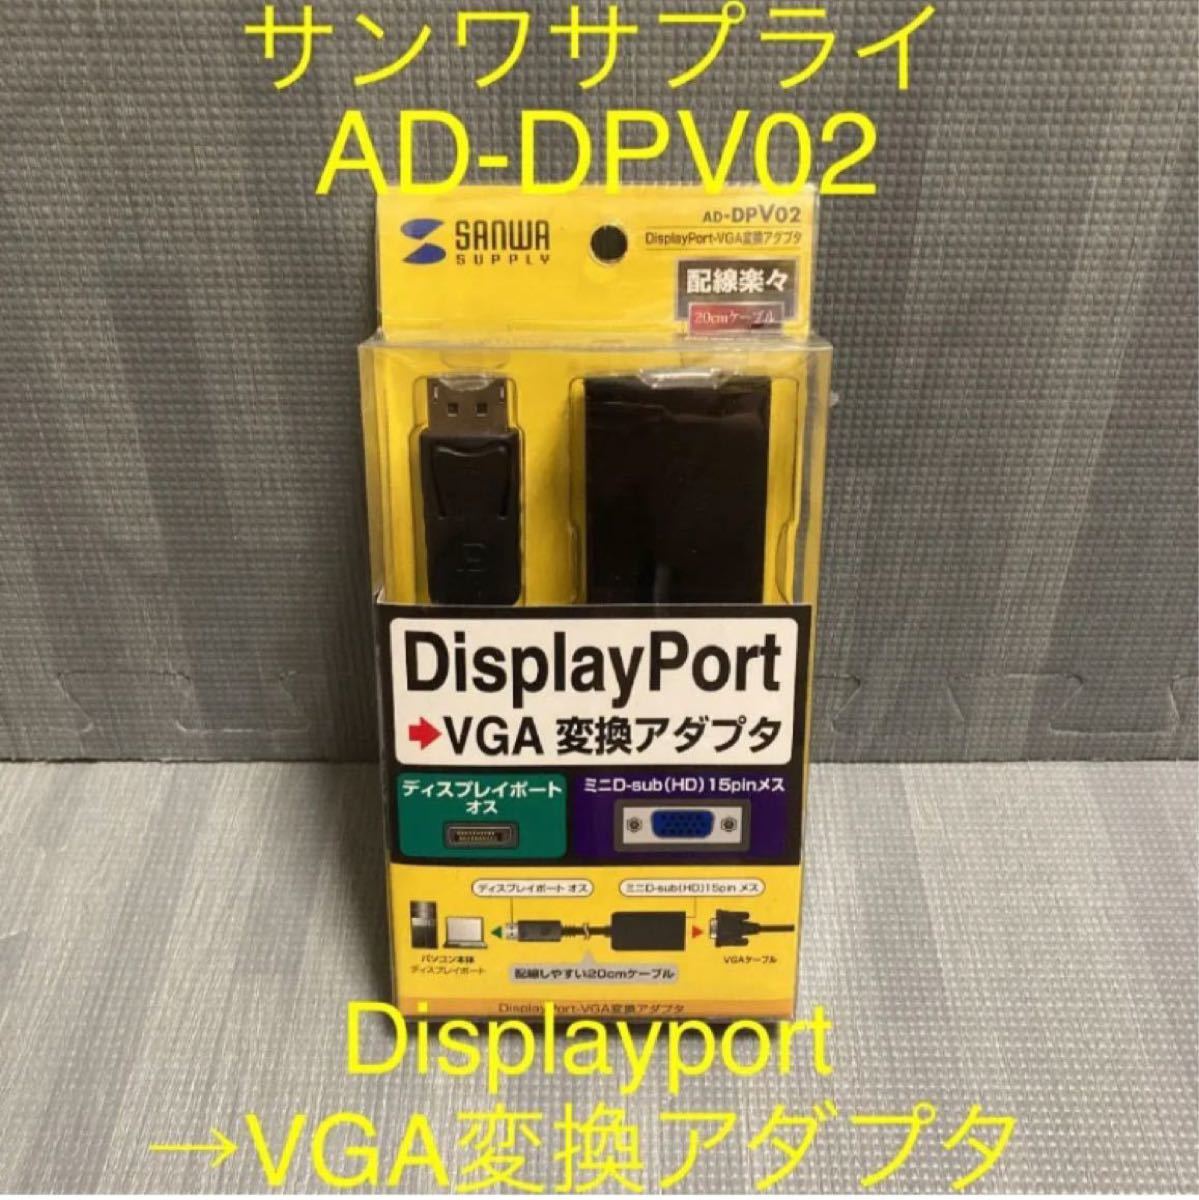 サンワサプライ AD-DPV02 Displayport-VGA 変換アダプタ  DisplayPort  変換ケーブル